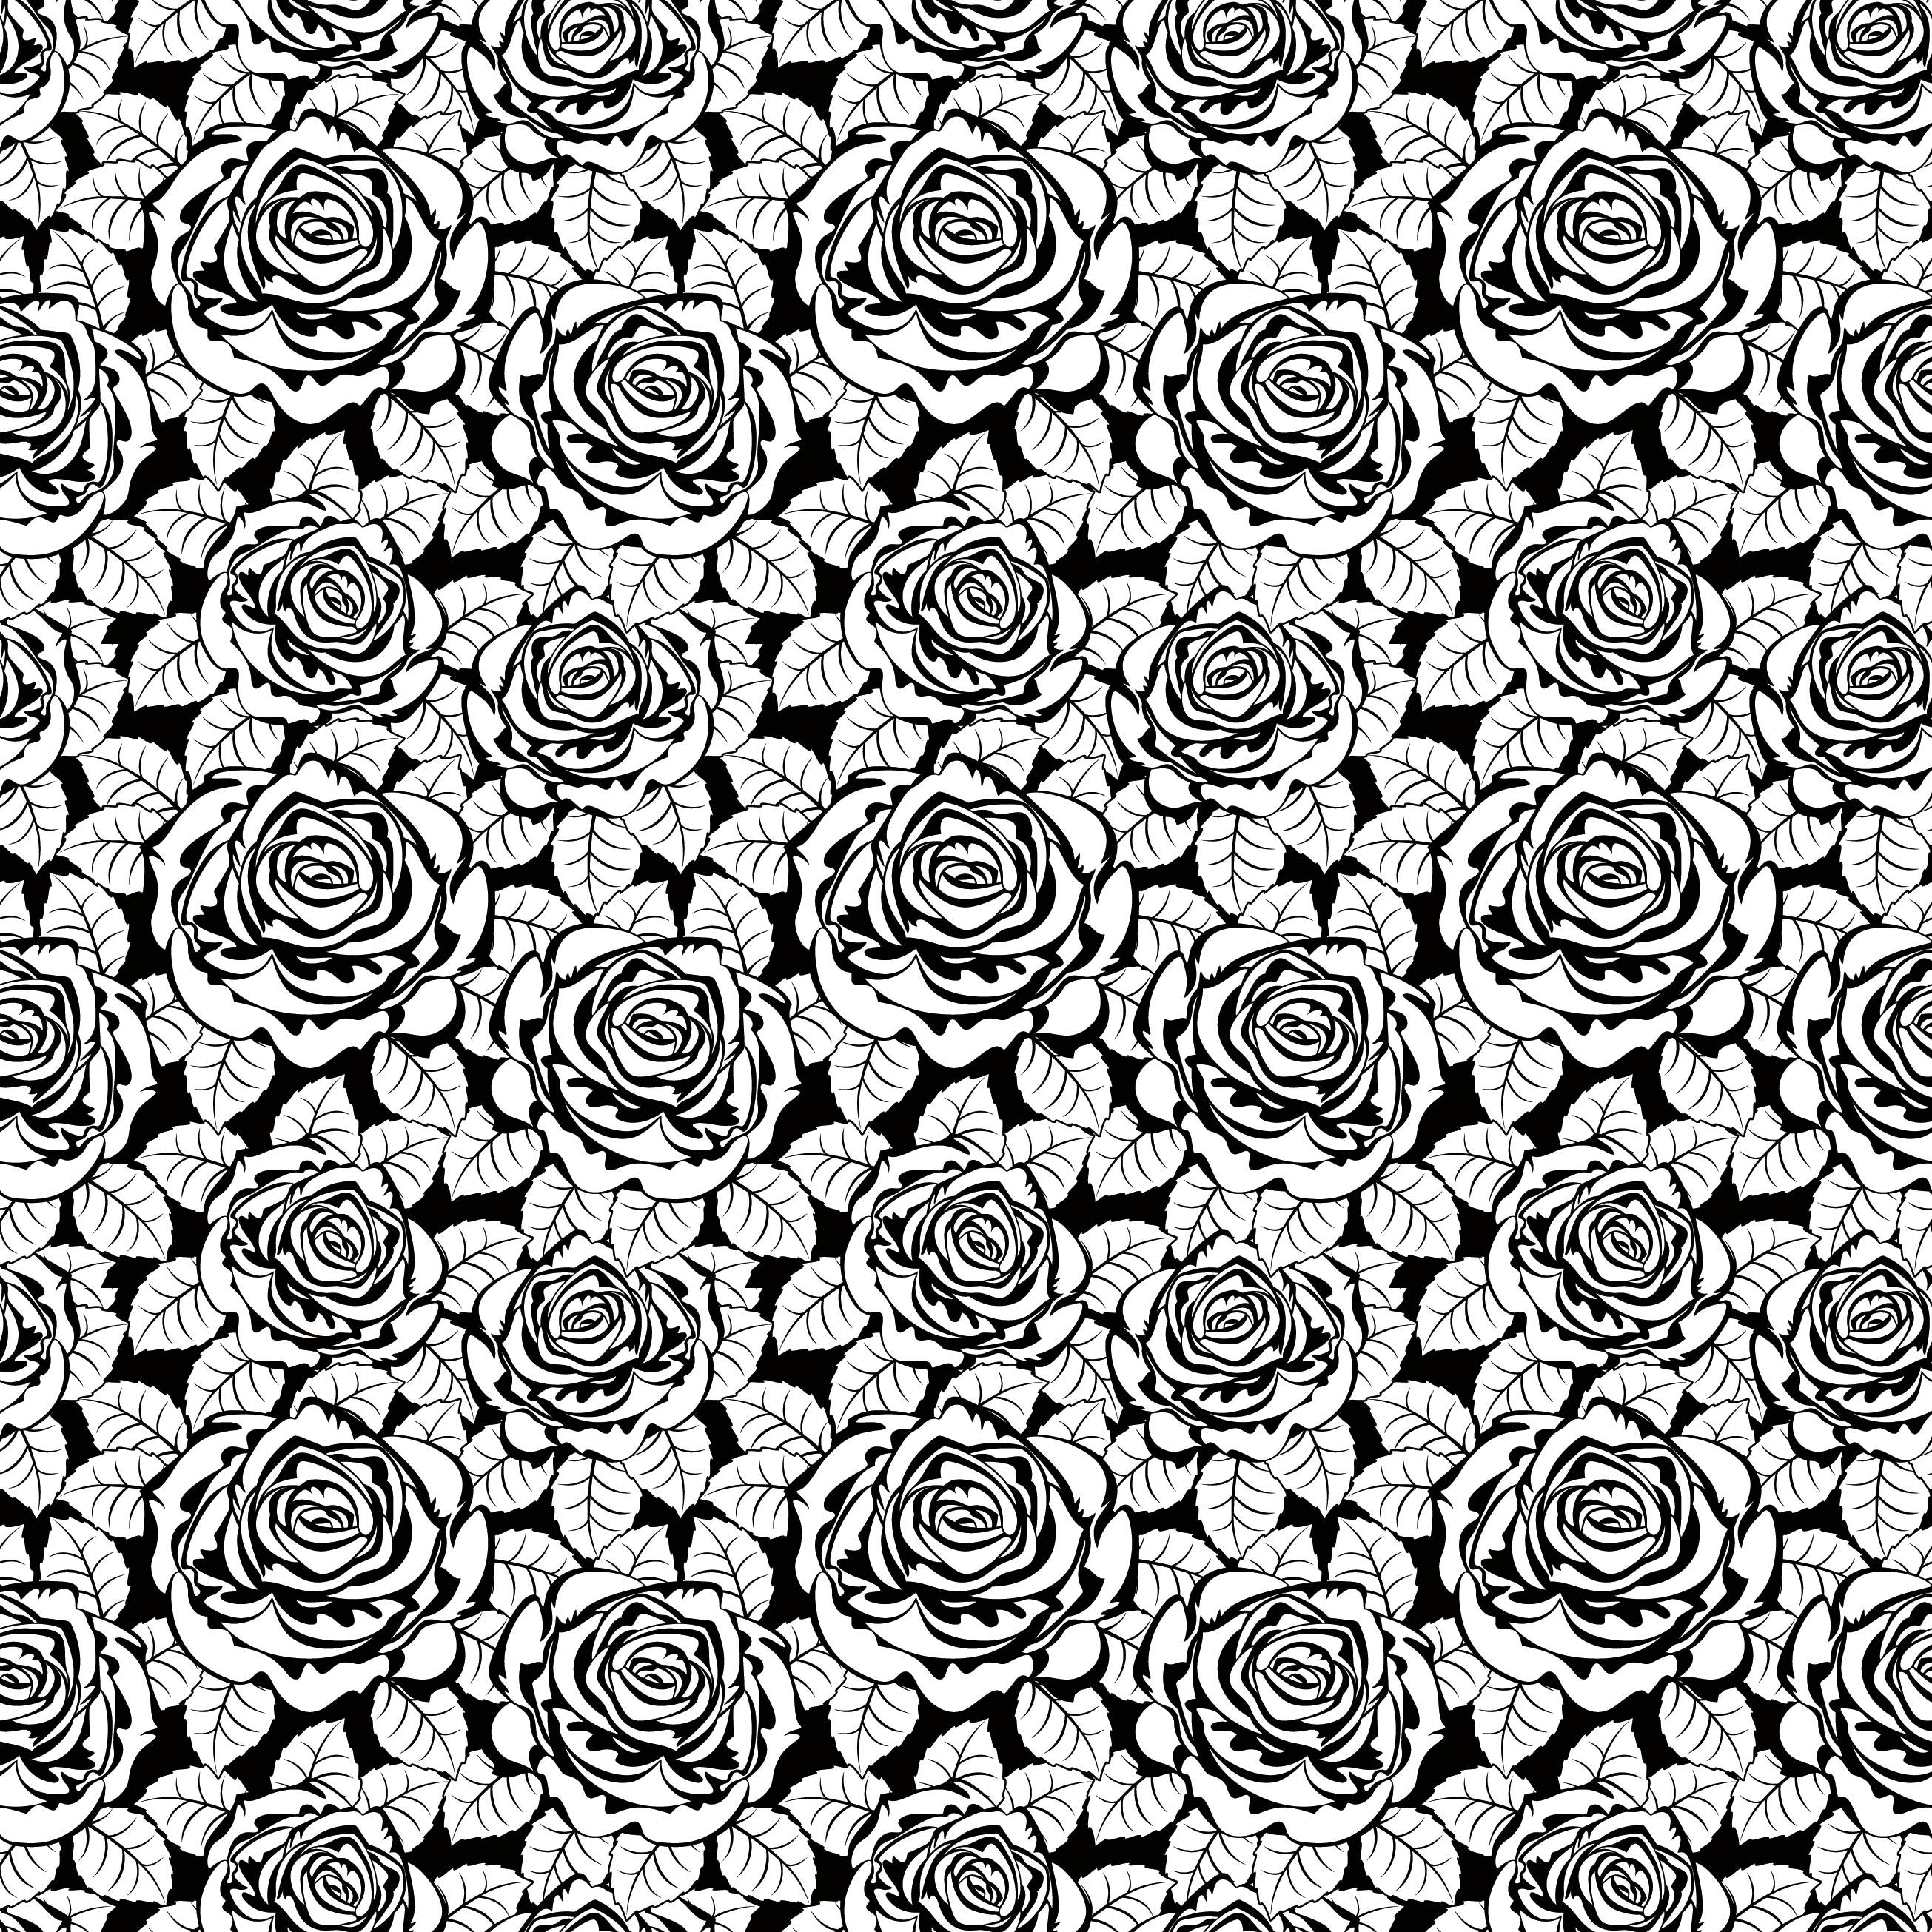 バラのイラスト 画像no 238 壁紙 白黒のバラのパターン 無料のフリー素材集 百花繚乱